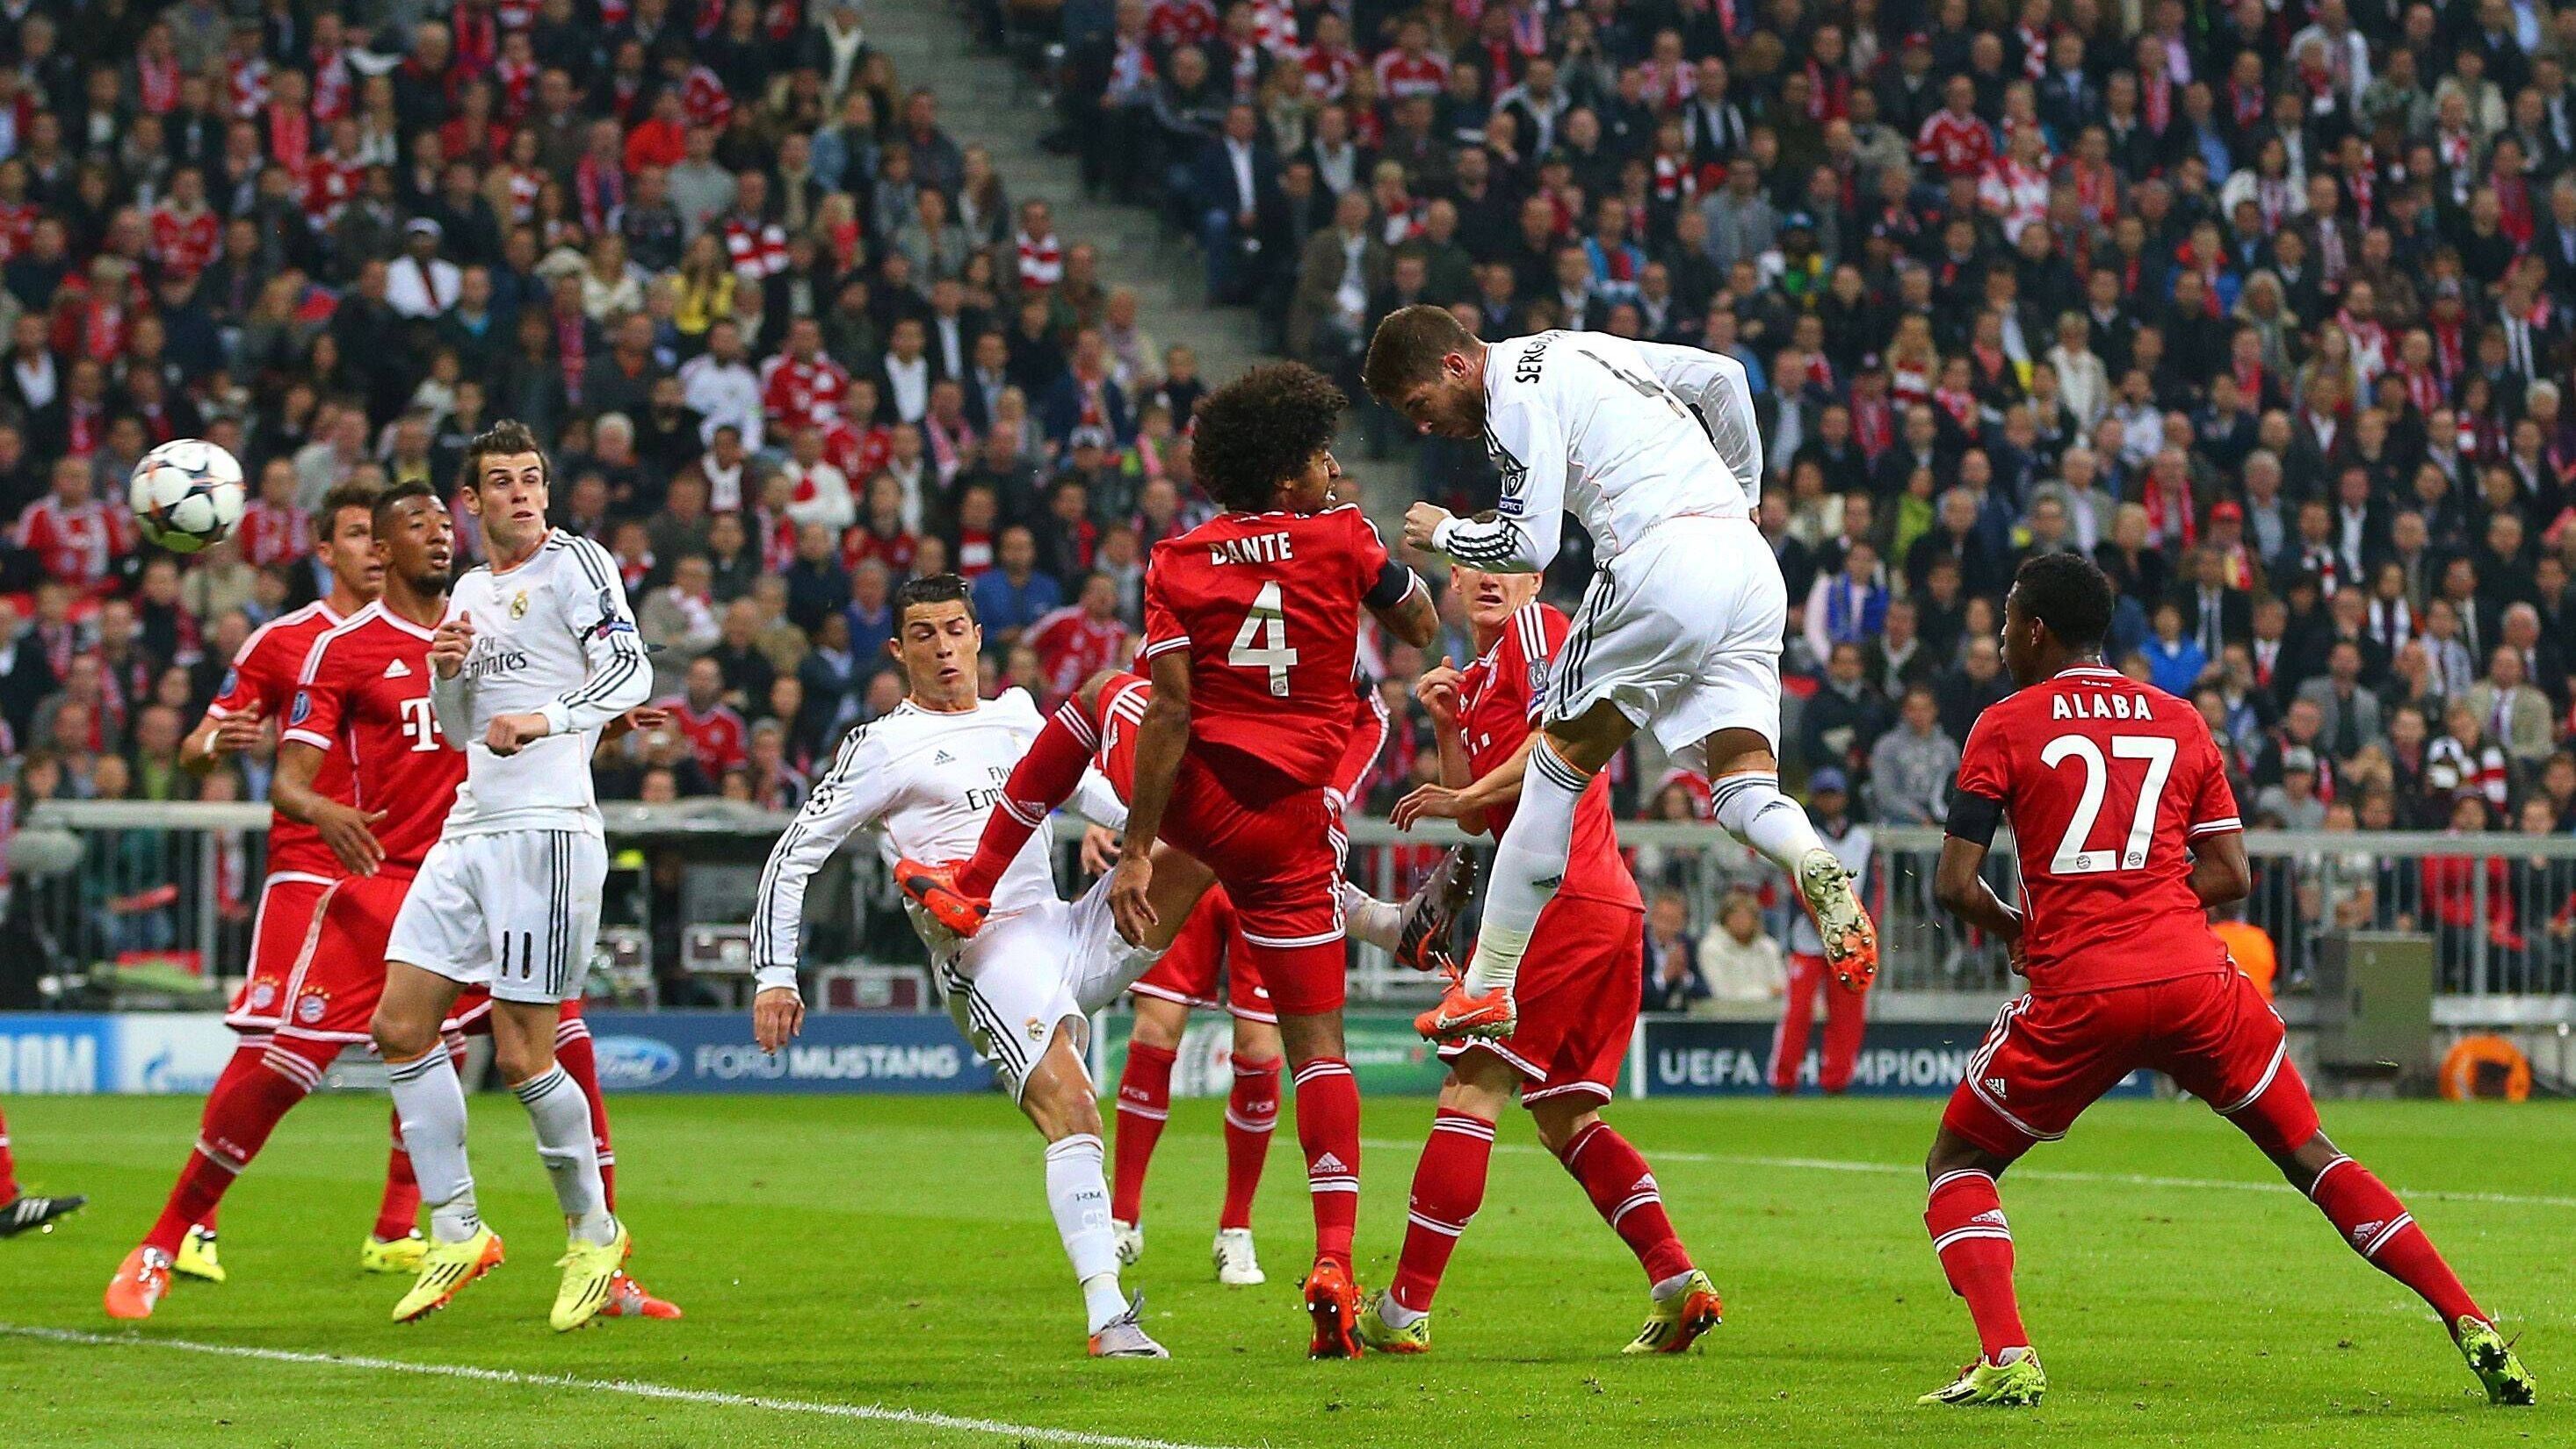 <strong>29. April 2014: Peps größter Fehler</strong><br> 0:1 in Madrid. Alles noch drin im Halbfinal-Rückspiel 2013/14. Doch Pep Guardiola, in seiner ersten Saison beim damals amtierenden Champions-League-Sieger, begeht vor dem Rückspiel in München den ihm zufolge "größten Fehler meiner Karriere", indem er die Mannschaft die Taktik bestimmen lässt. Die Bayern, auf totale Offensive gepolt, laufen Carlo Ancelottis Real ins offene Messer - 0:4!